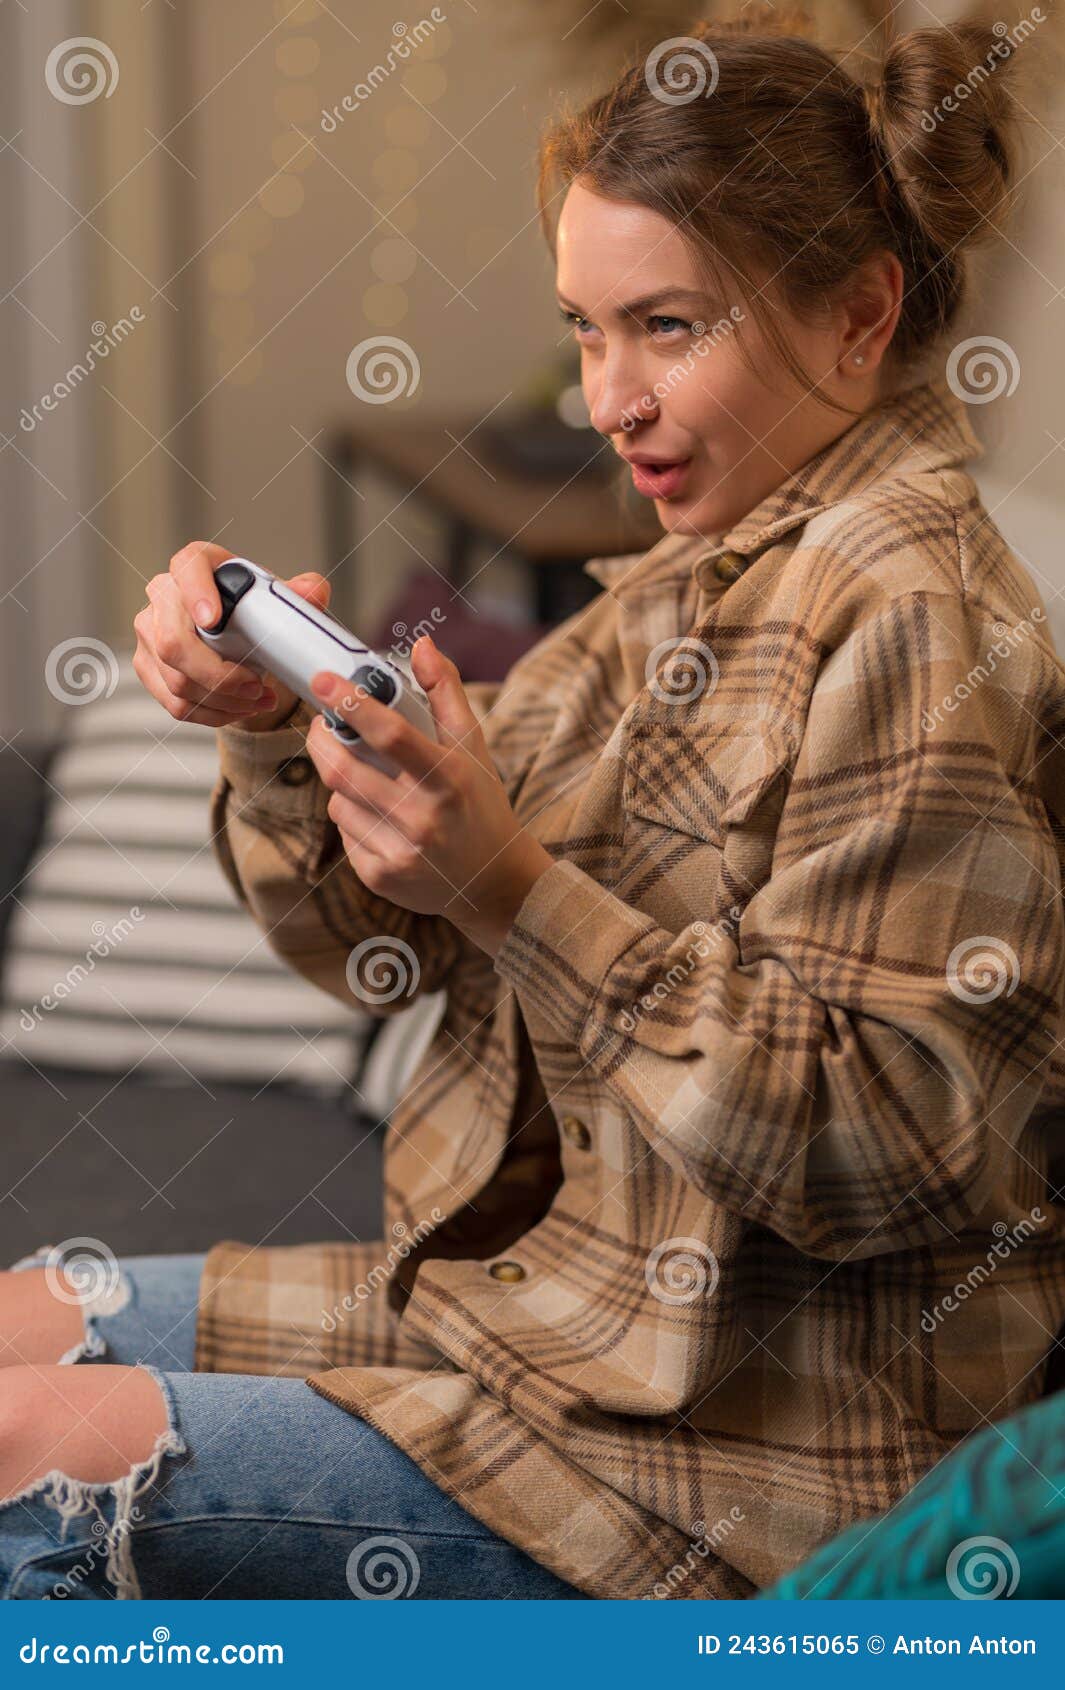 Uma Garota Com Um Gamepad Em Suas Mãos Joga Um Videogame